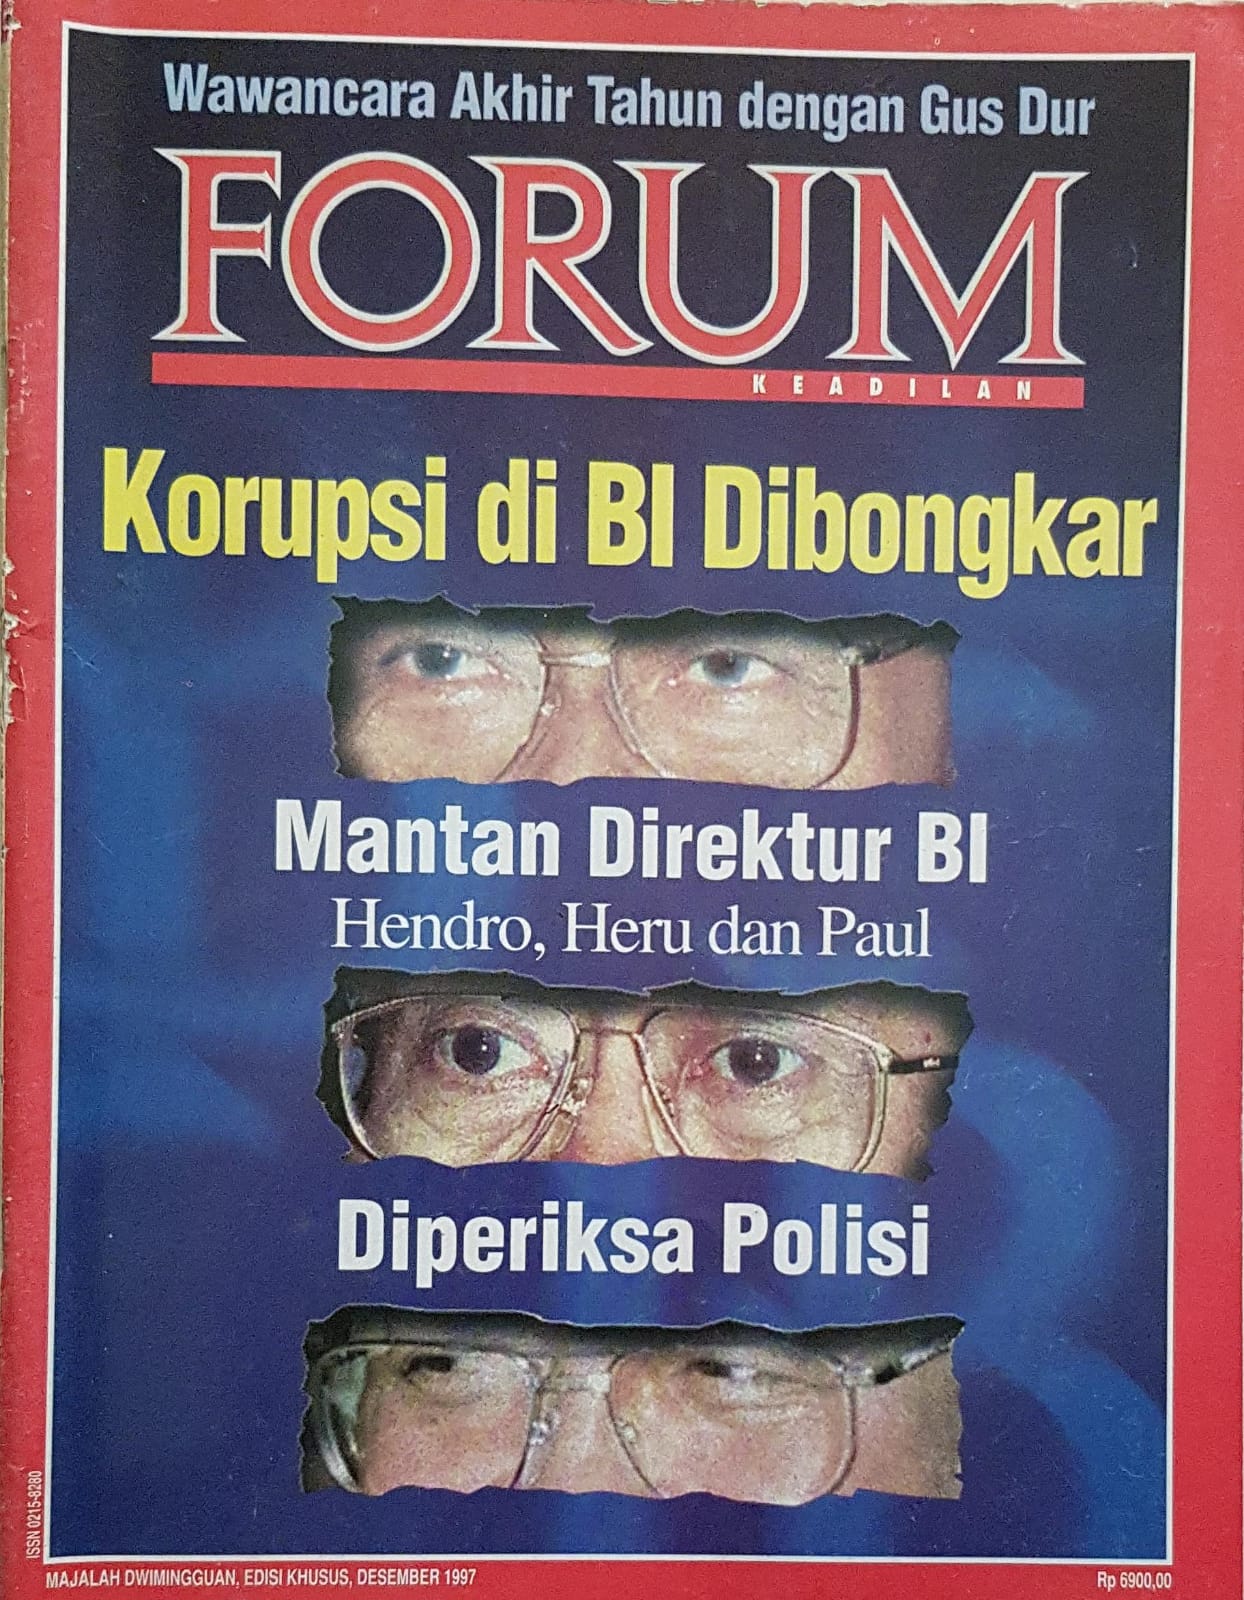 Forum Keadilan, Edisi Khusus Desember 1997